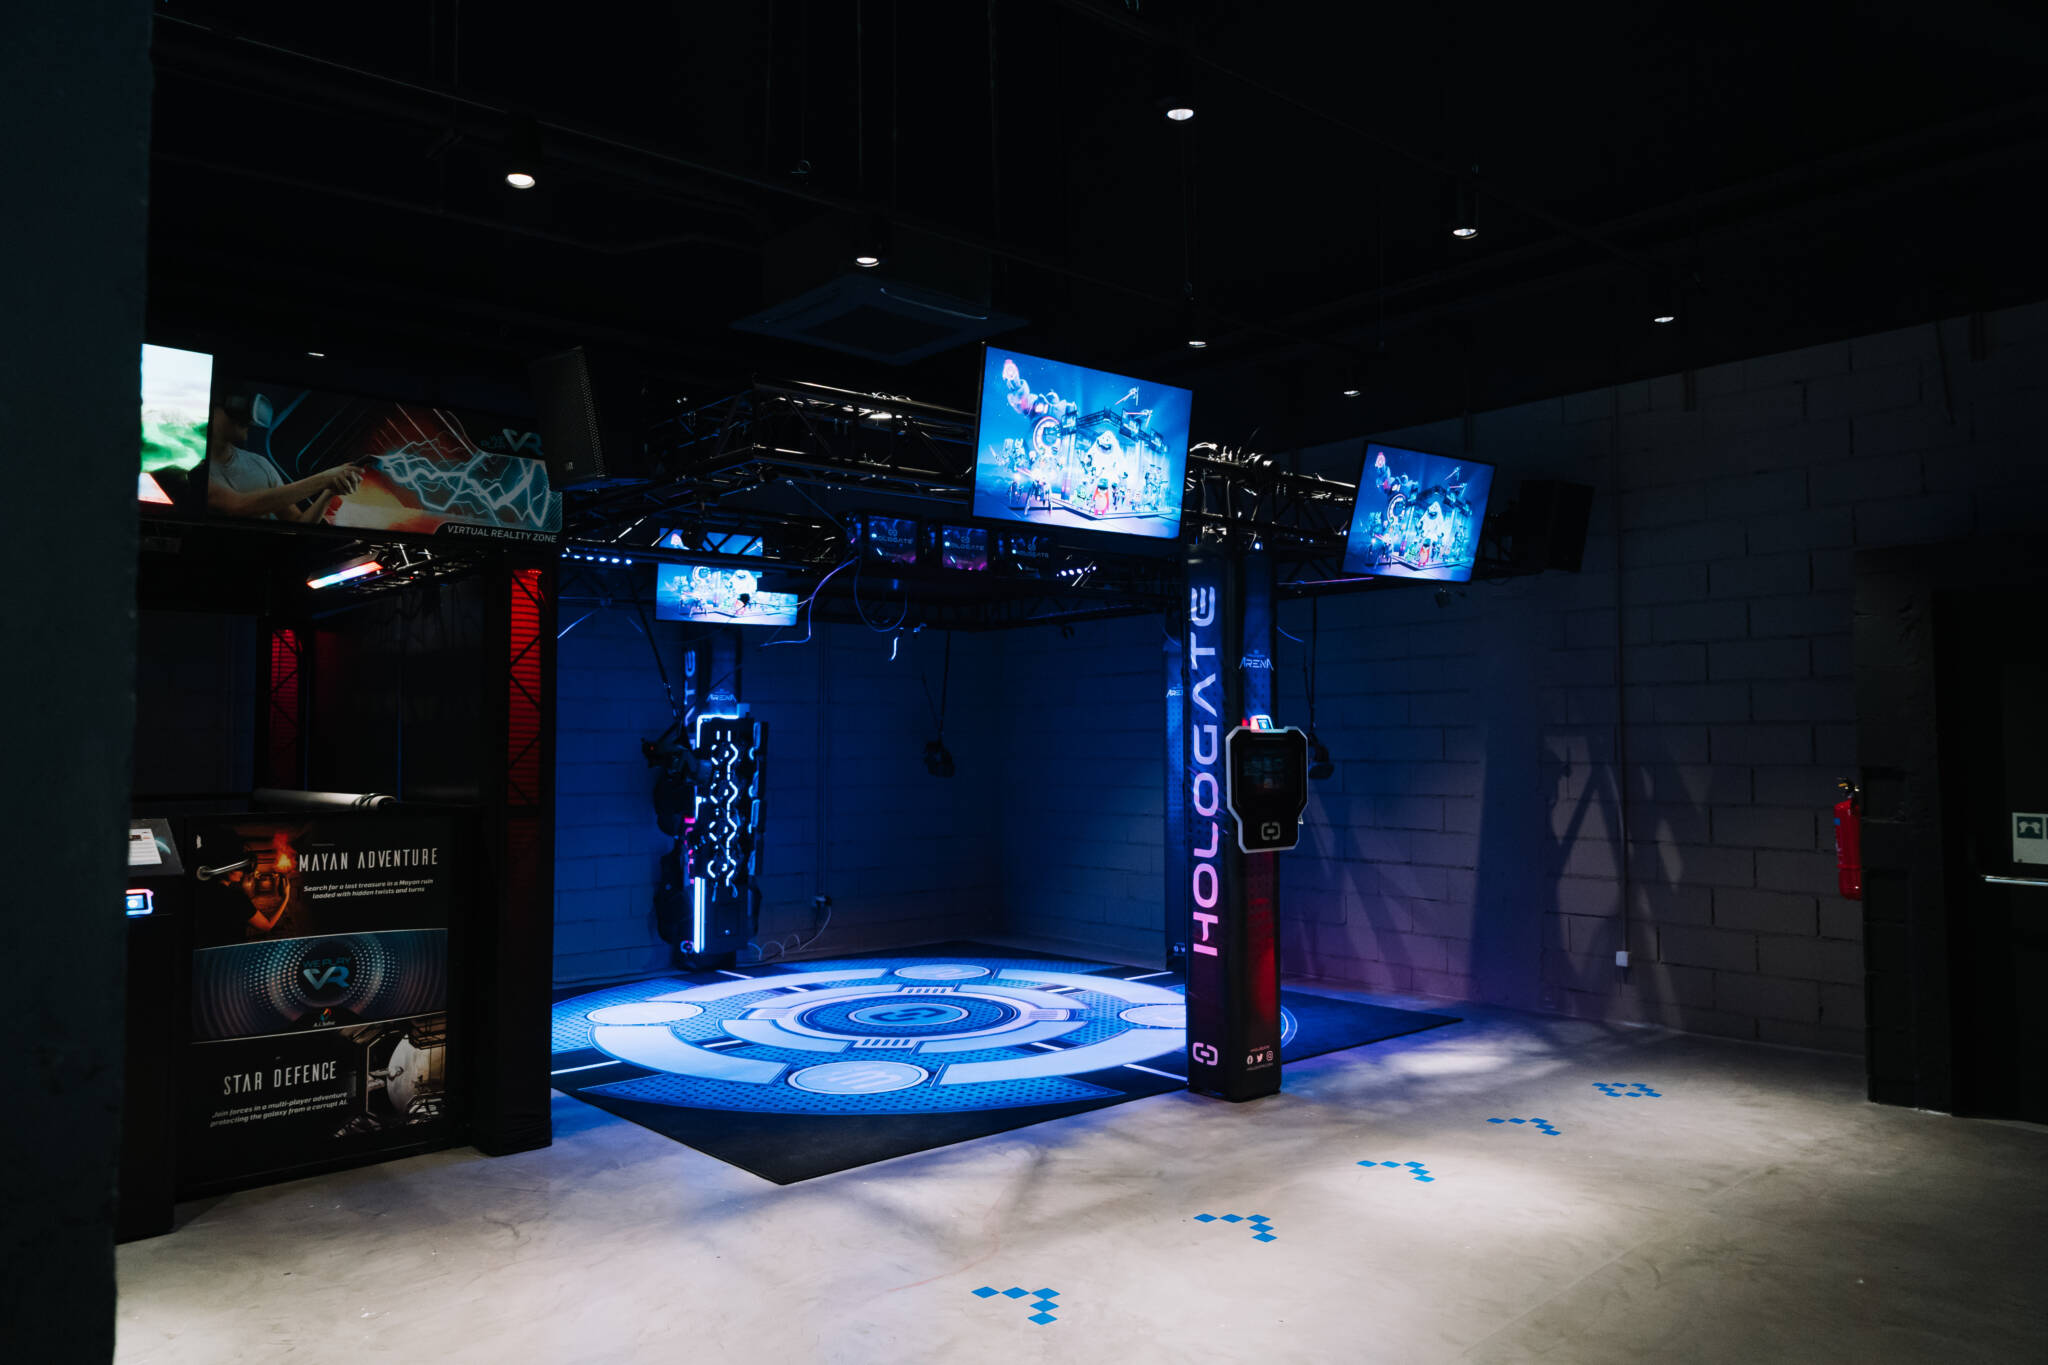 NorteShopping,ROCK'N'BOWL Arcade, NorteShopping recebe espaço de diversão com jogos arcade (e realidade virtual)